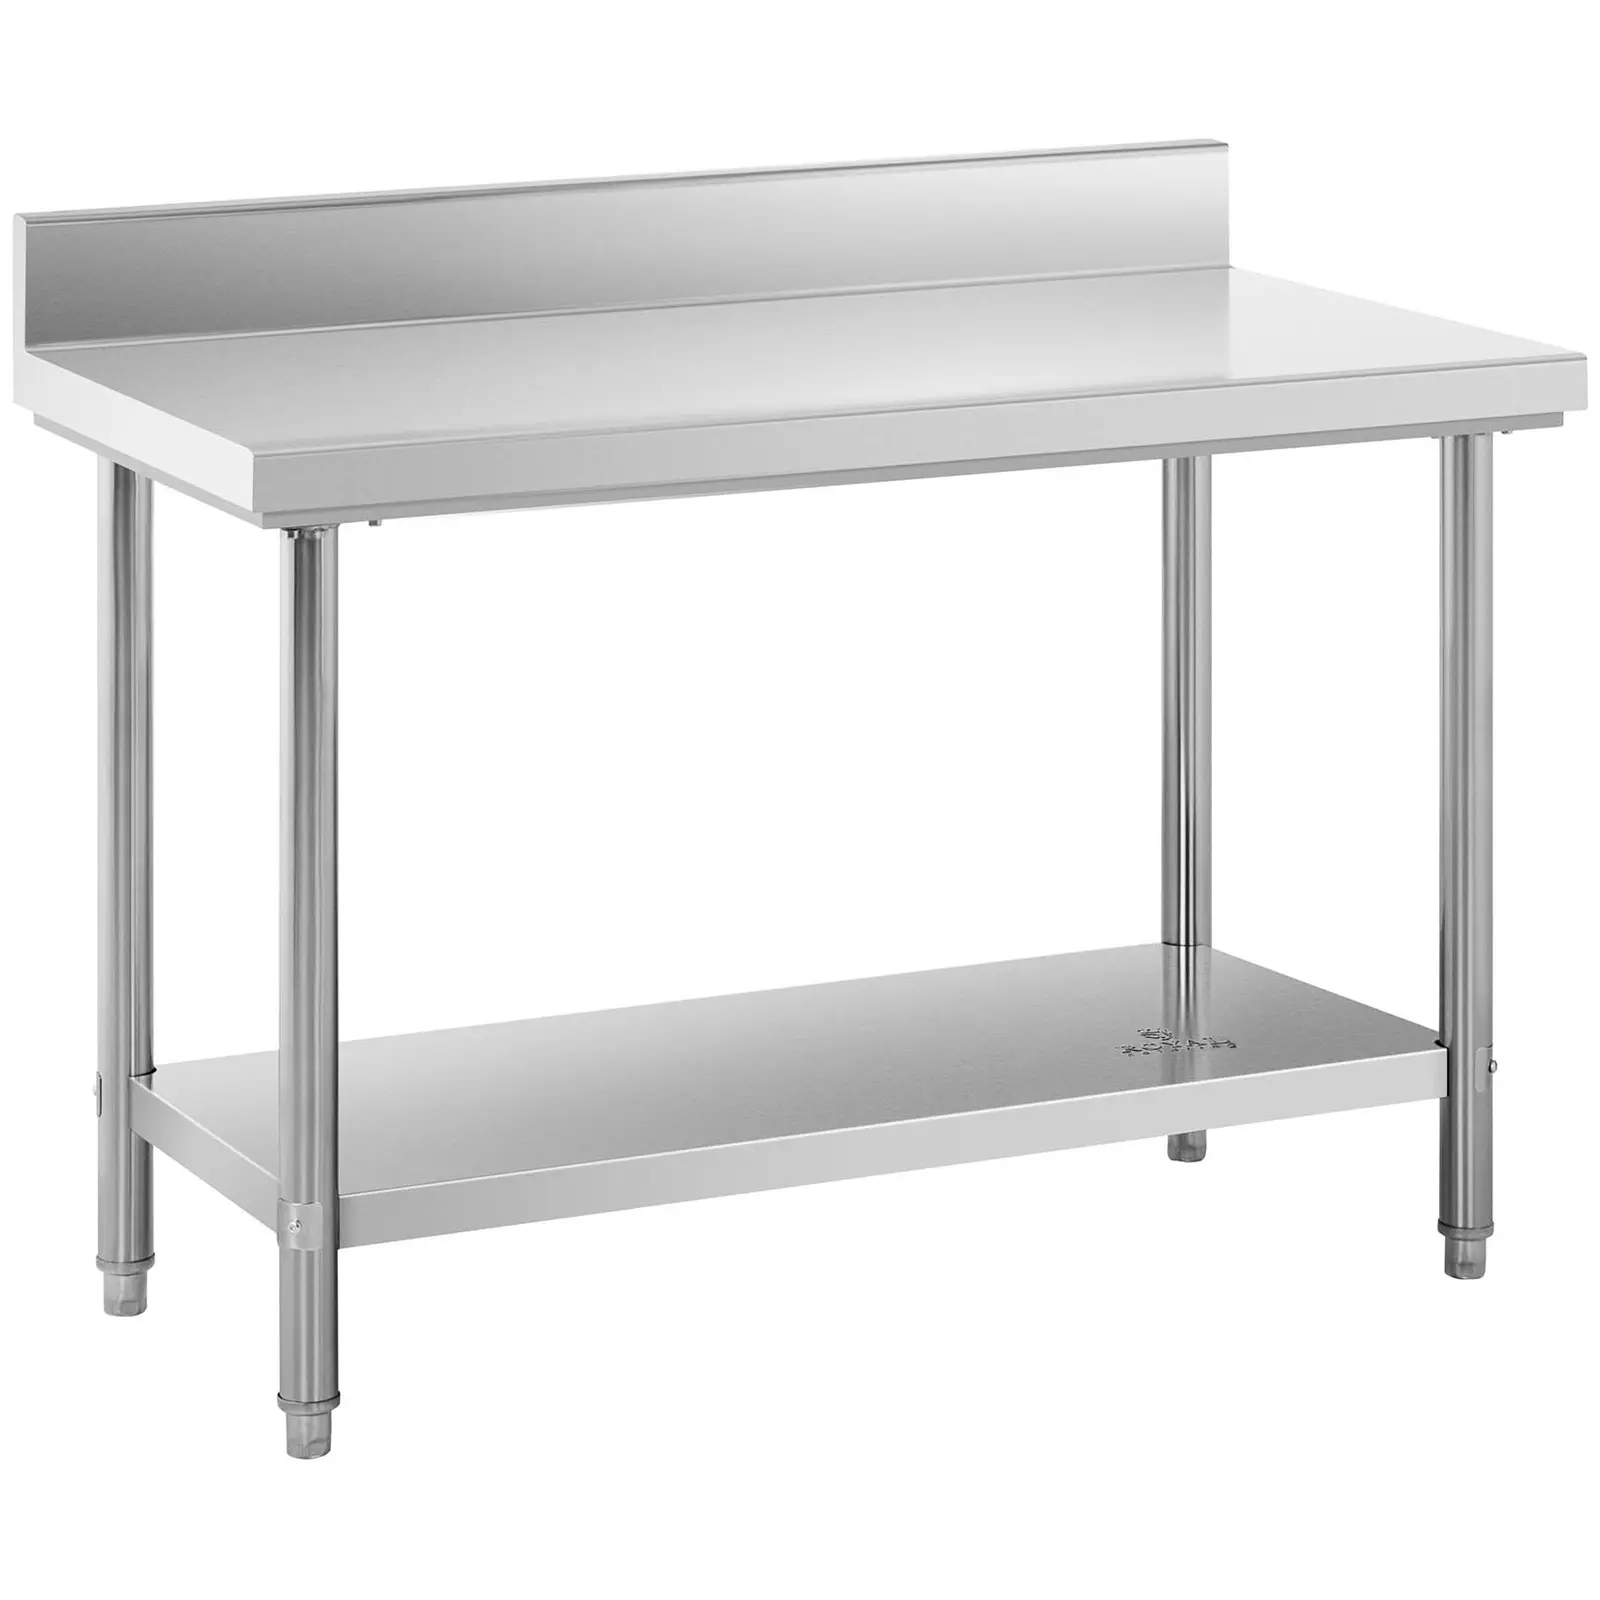 Pracovní stůl z ušlechtilé oceli 120 x 60 cm lem nosnost 198 kg - Pracovní stoly Royal Catering